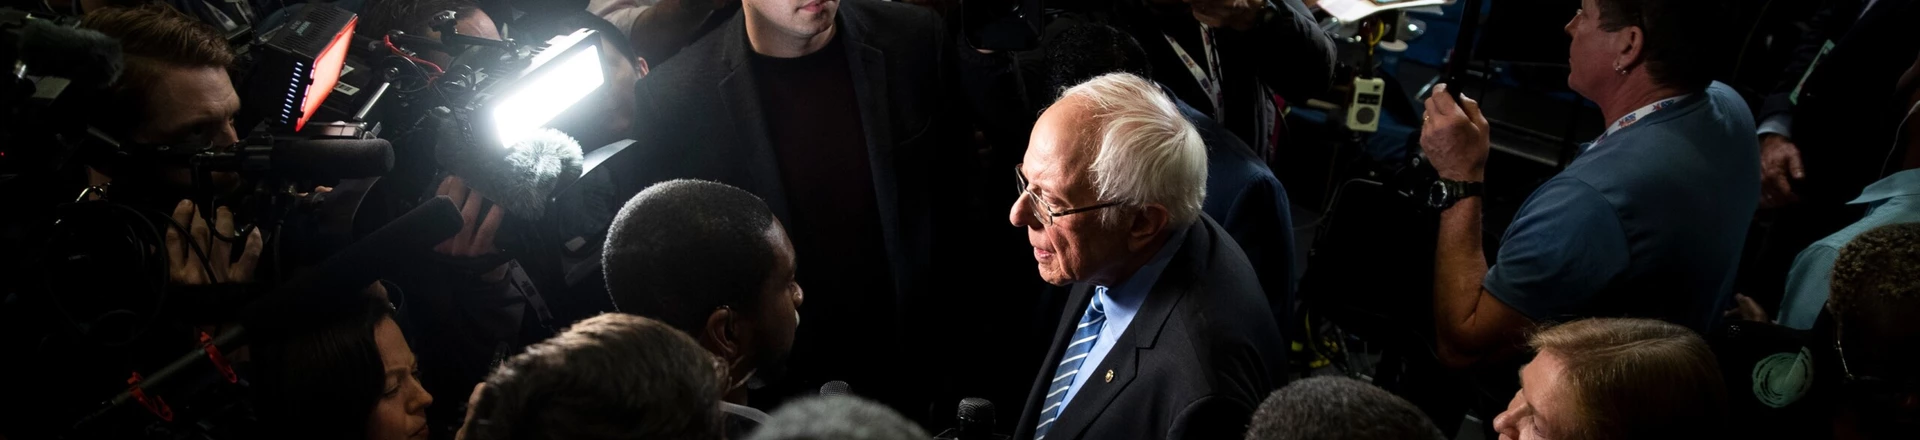 O senador Bernie Sanders fala com a imprensa após o debate das primárias democratas em Charleston, na Carolina do Sul, em 25 de fevereiro de 2020.